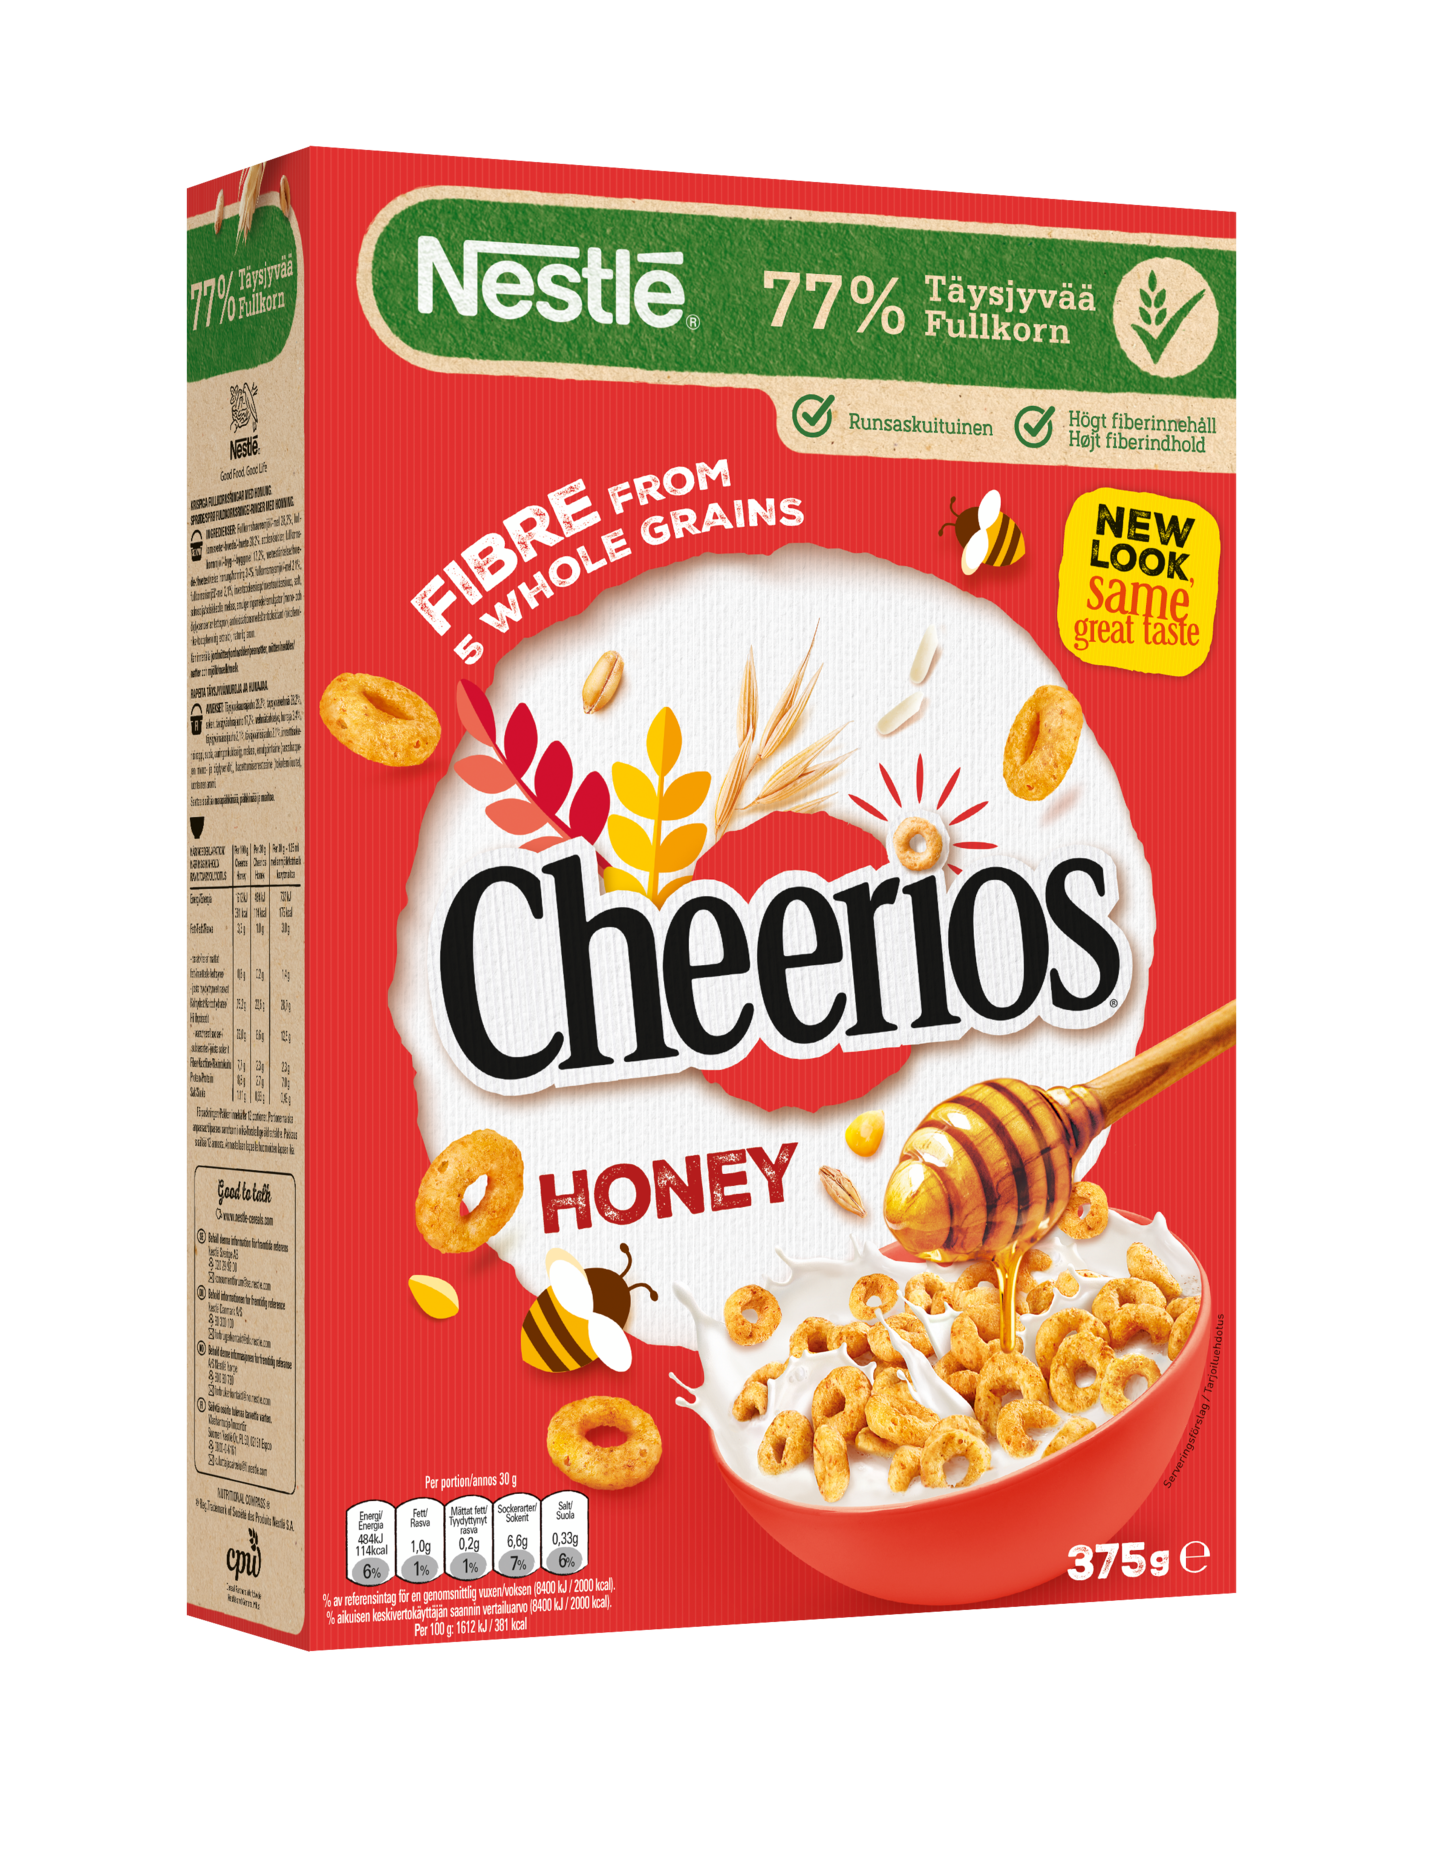 Nestlé Cheerios Honey 375g rapeita täysjyvämuroja ja hunajaa